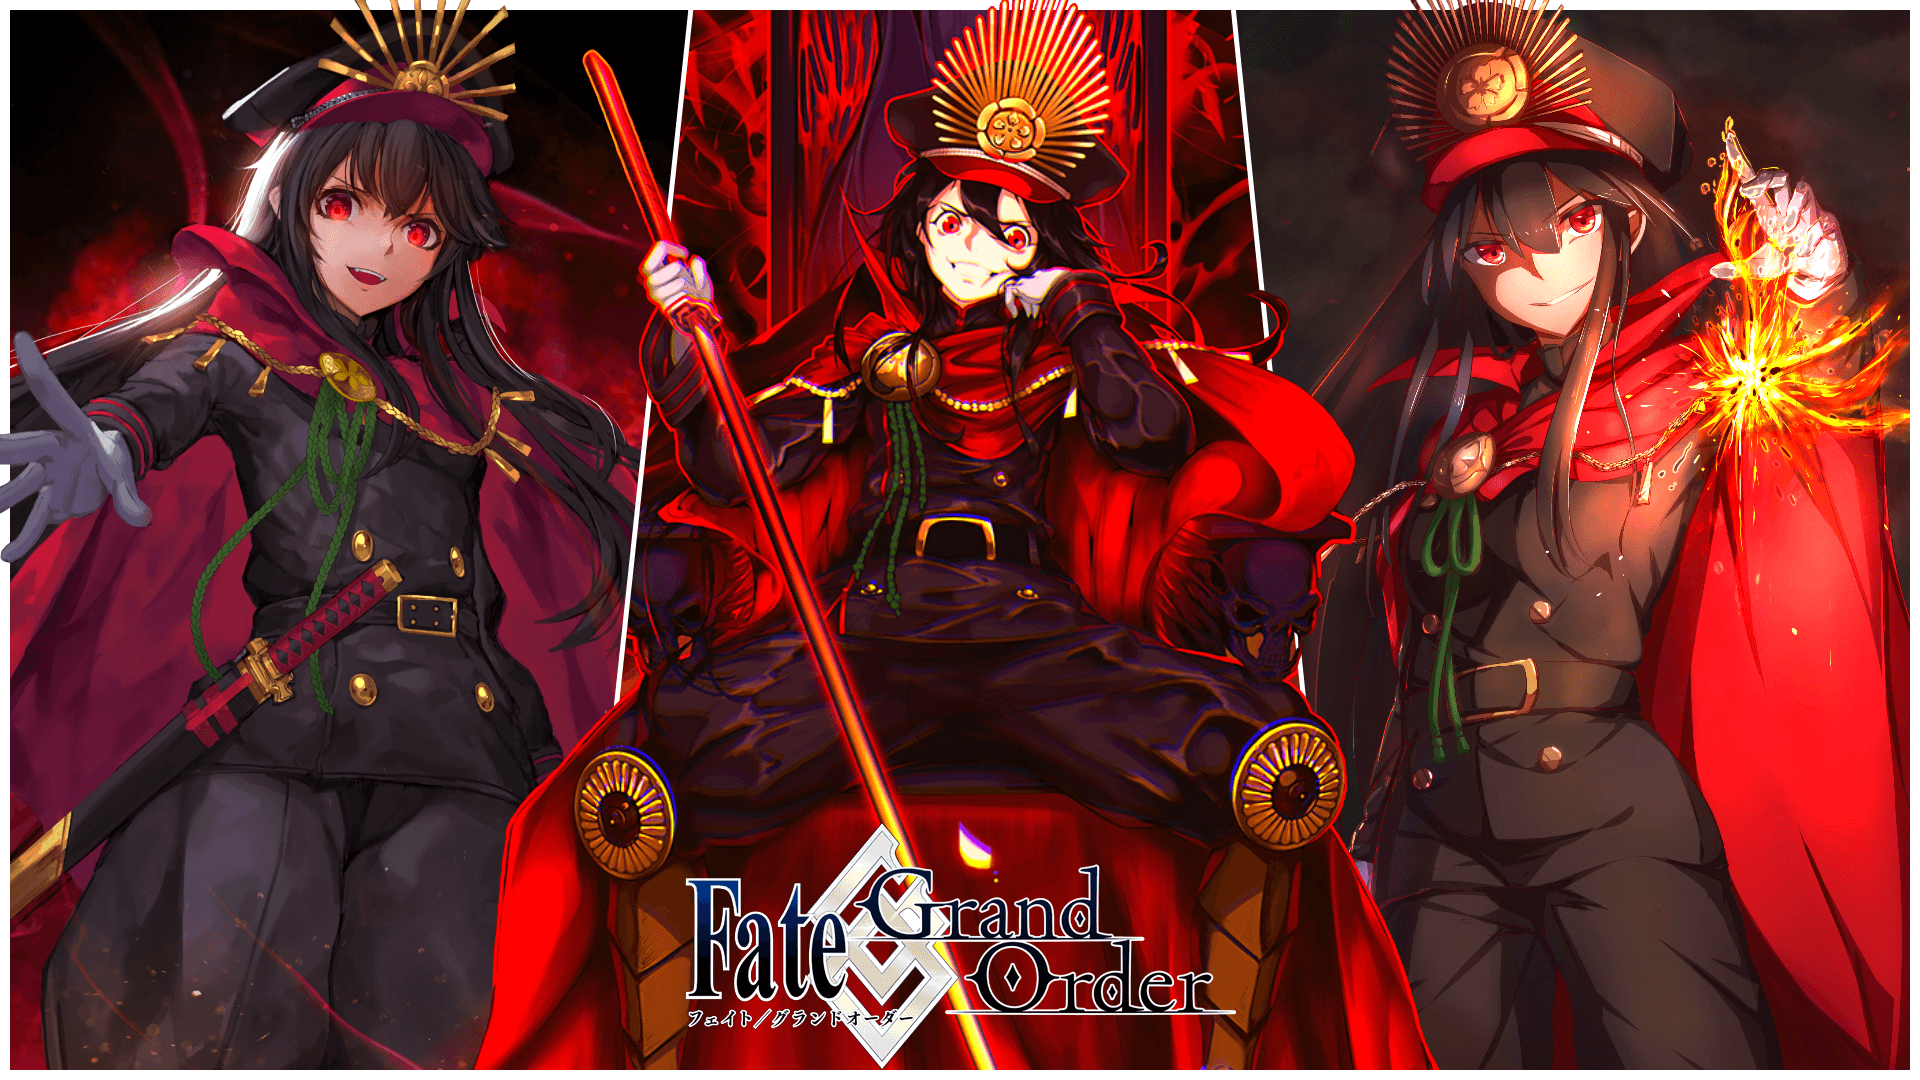 esteemed-gnu553: Demon King Anime Wallpaper